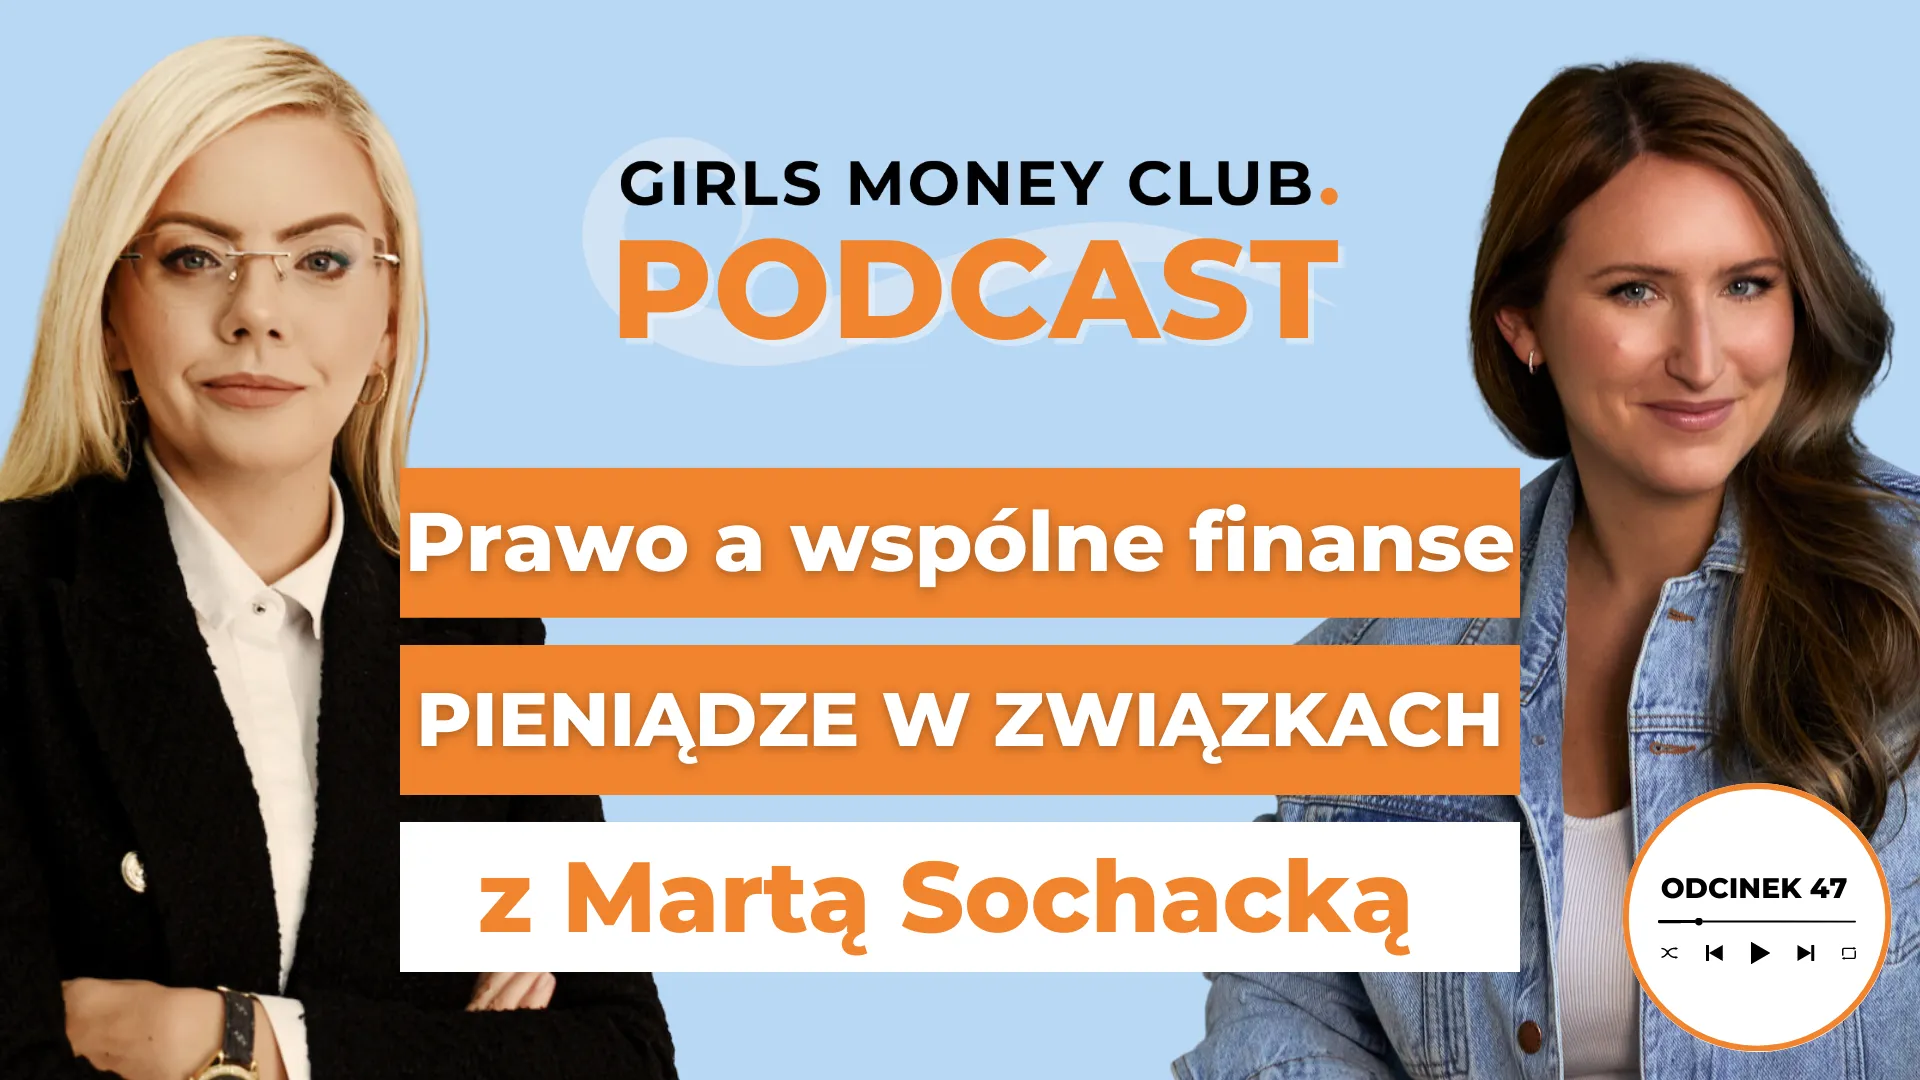 Pieniądze w małżeństwie i związku | Podcast | Girls Money Club